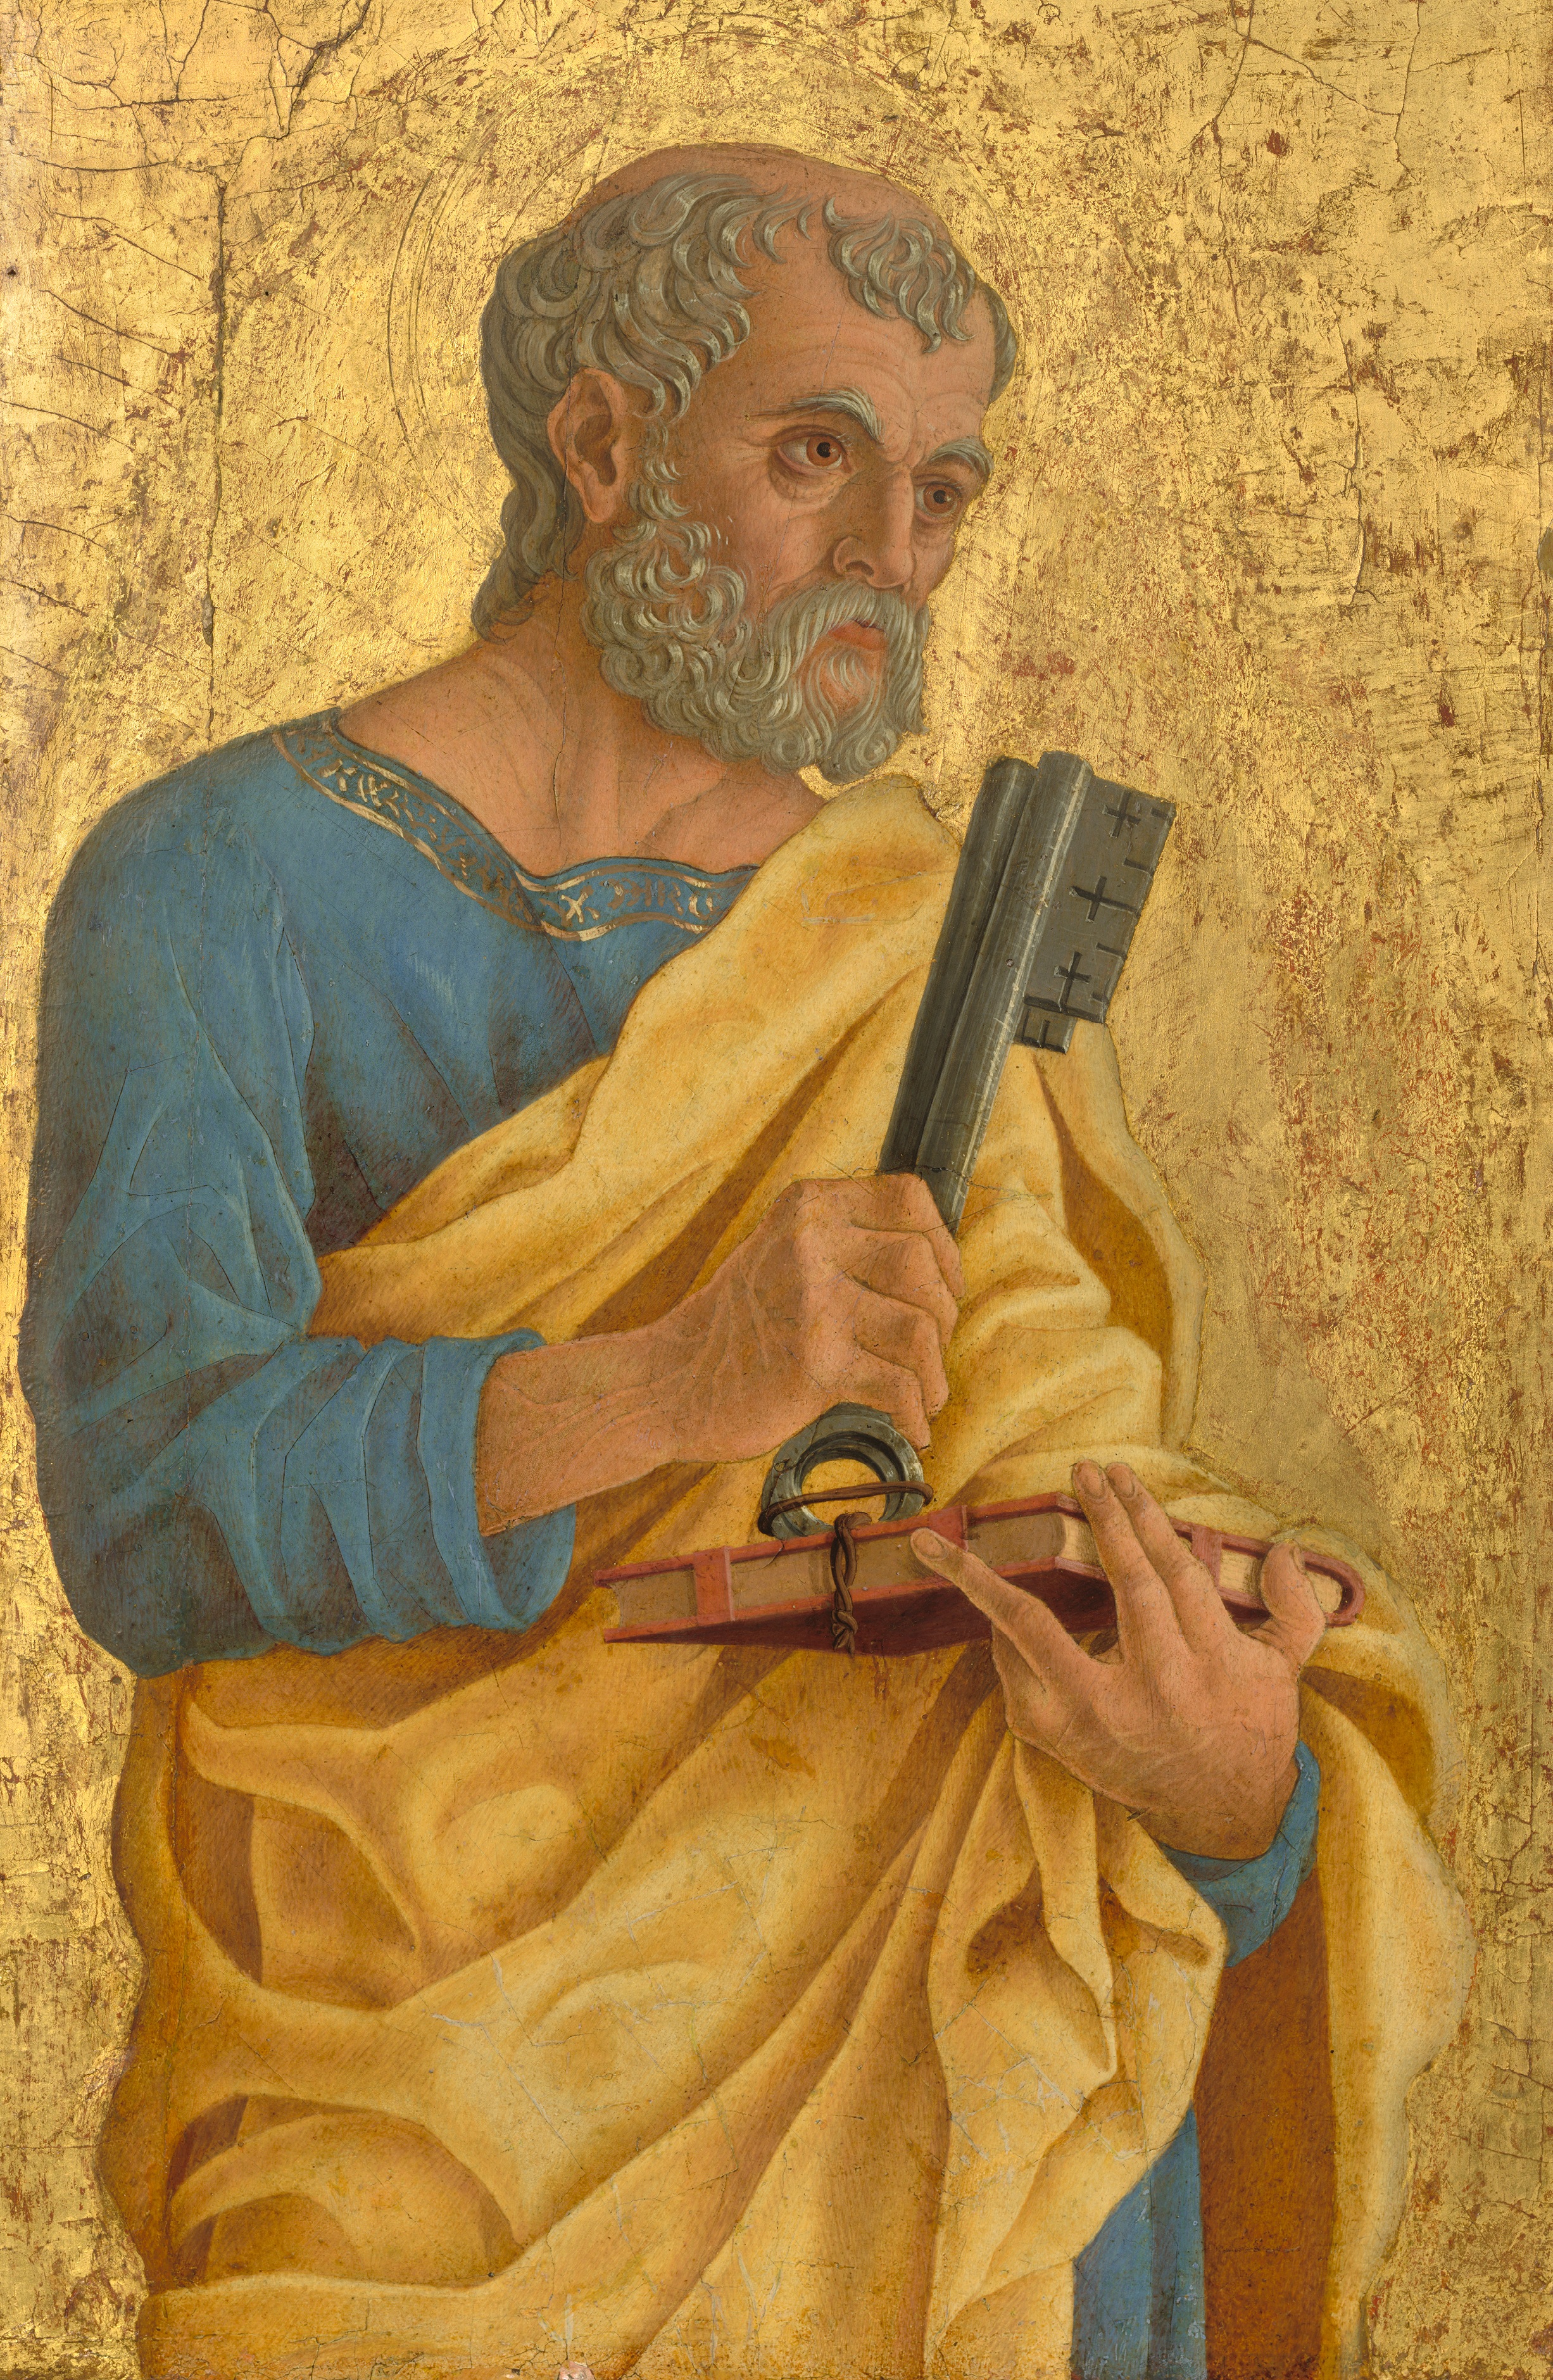 Św. Piotr Apostoł. Marco Zoppo, 1468 r.